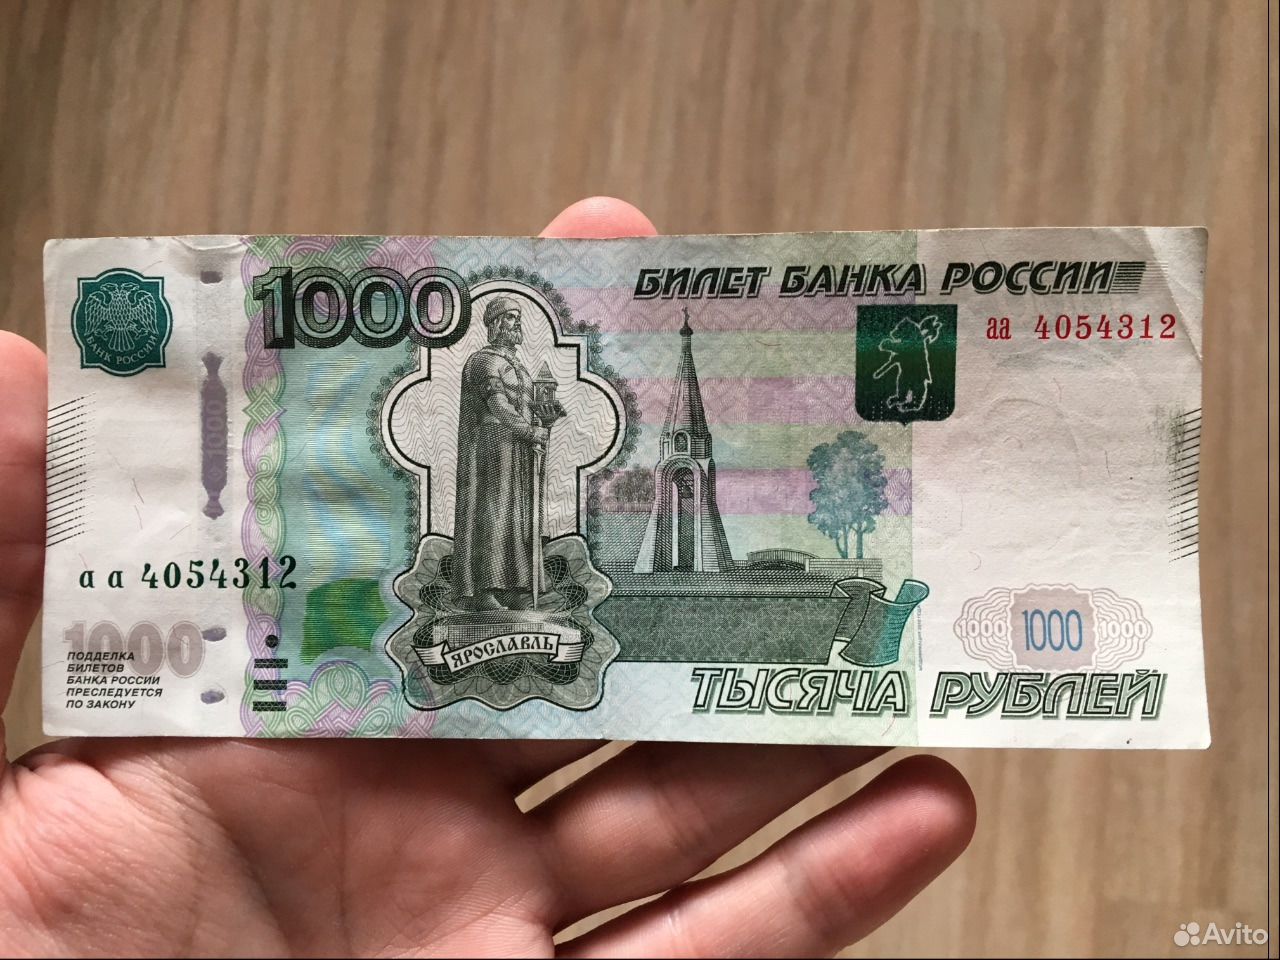 1 тыс 13 поделиться сохранить. 1000 Рублей. Купюра 1000 рублей. Банкнота 1000 рублей. Тысяча рублей в руке.